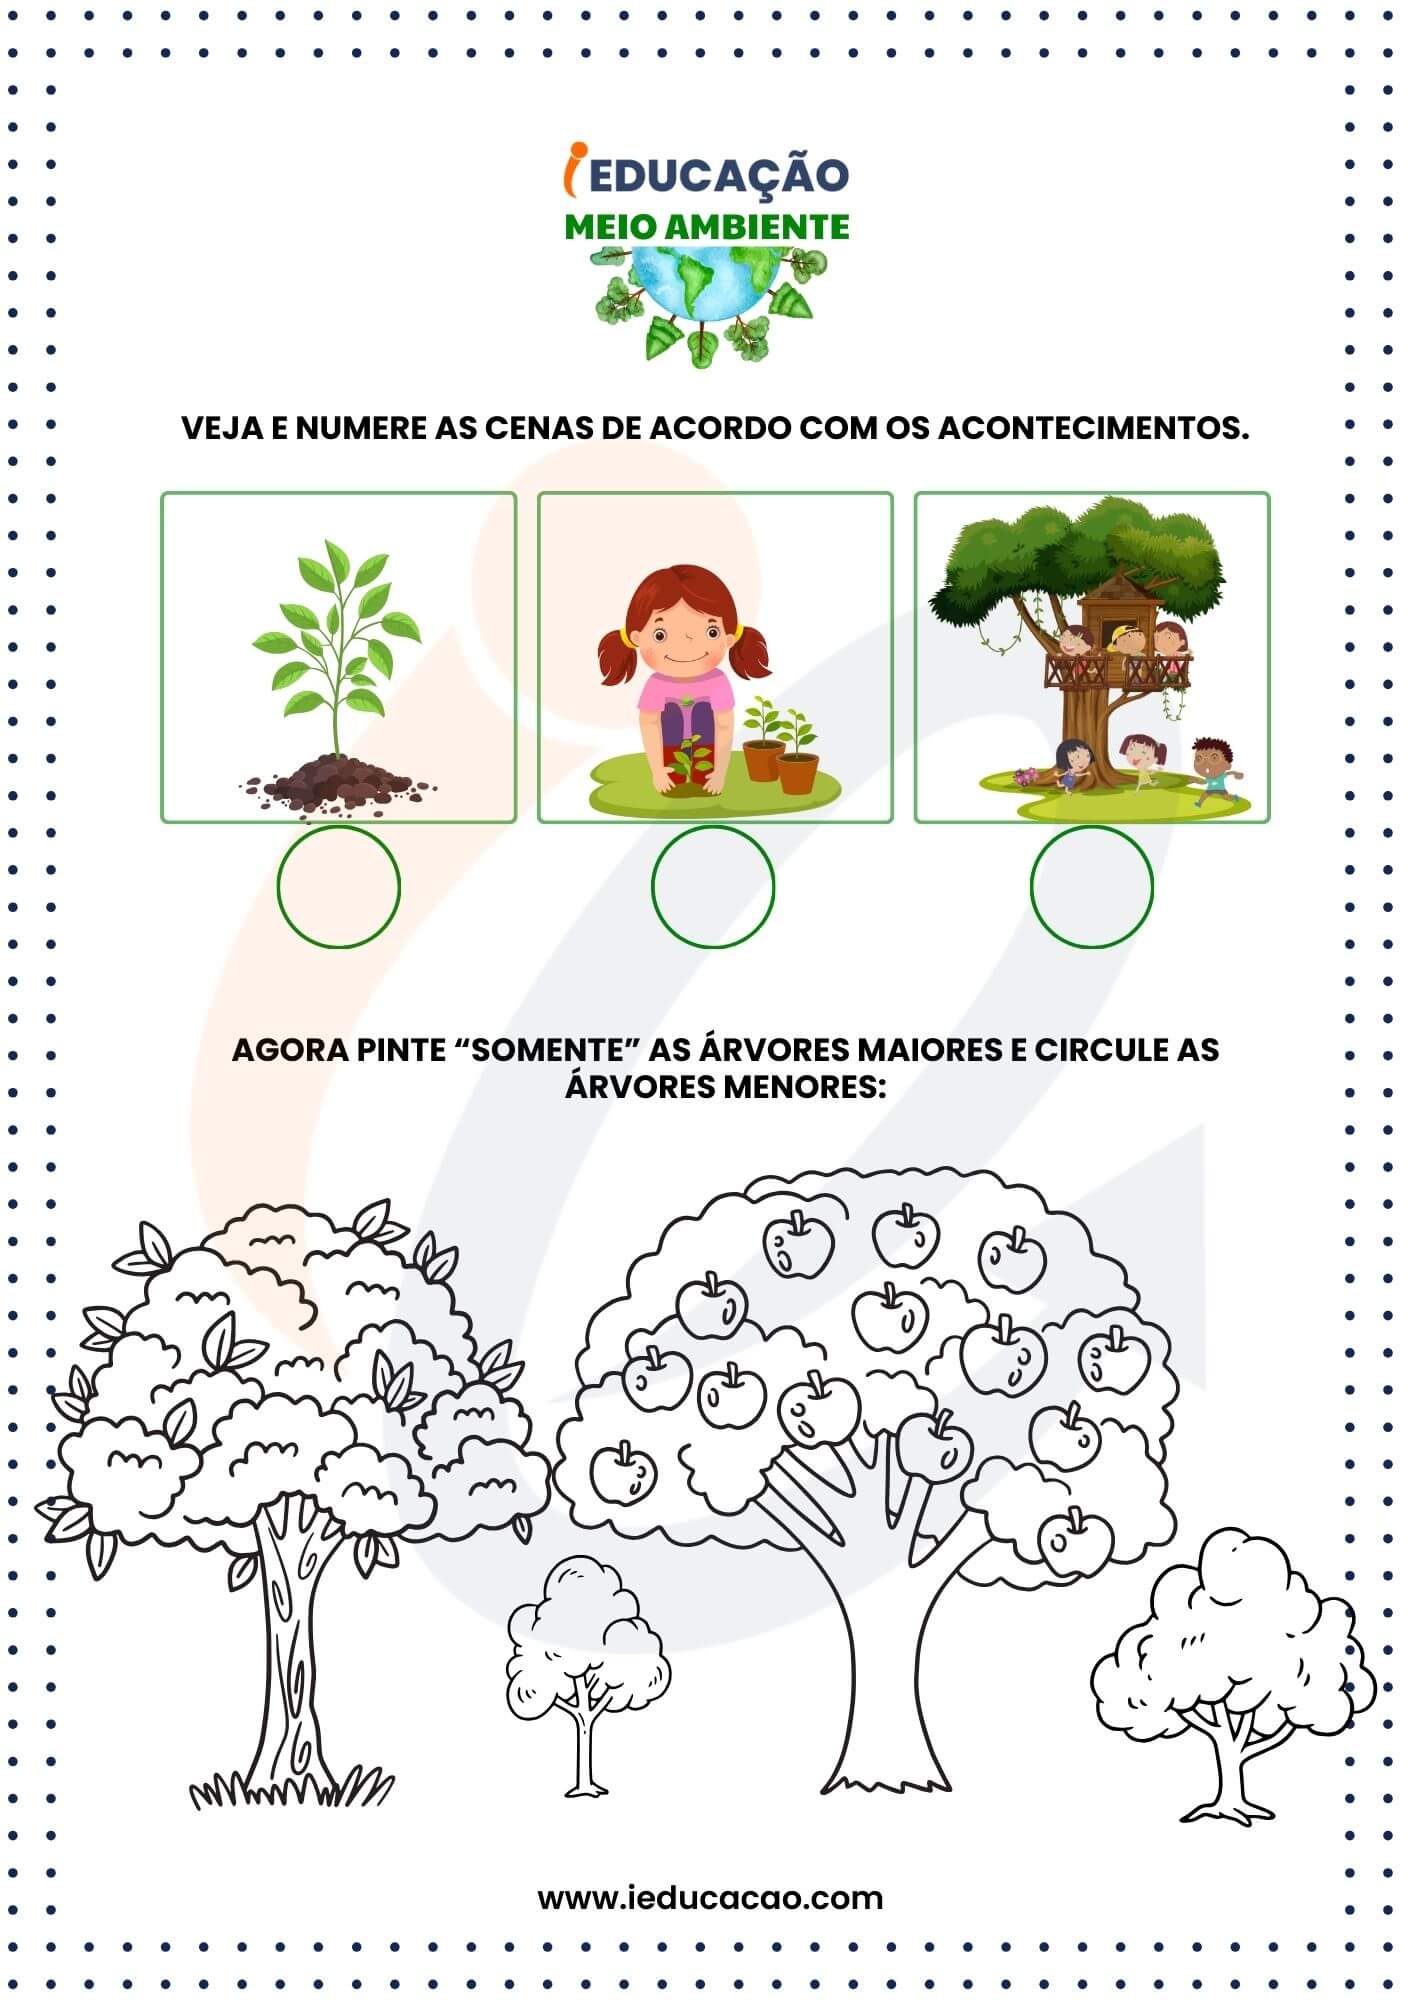 Atividades do meio ambiente - Educação Ambiental nas Escolas - Amostra Grátis.jpg